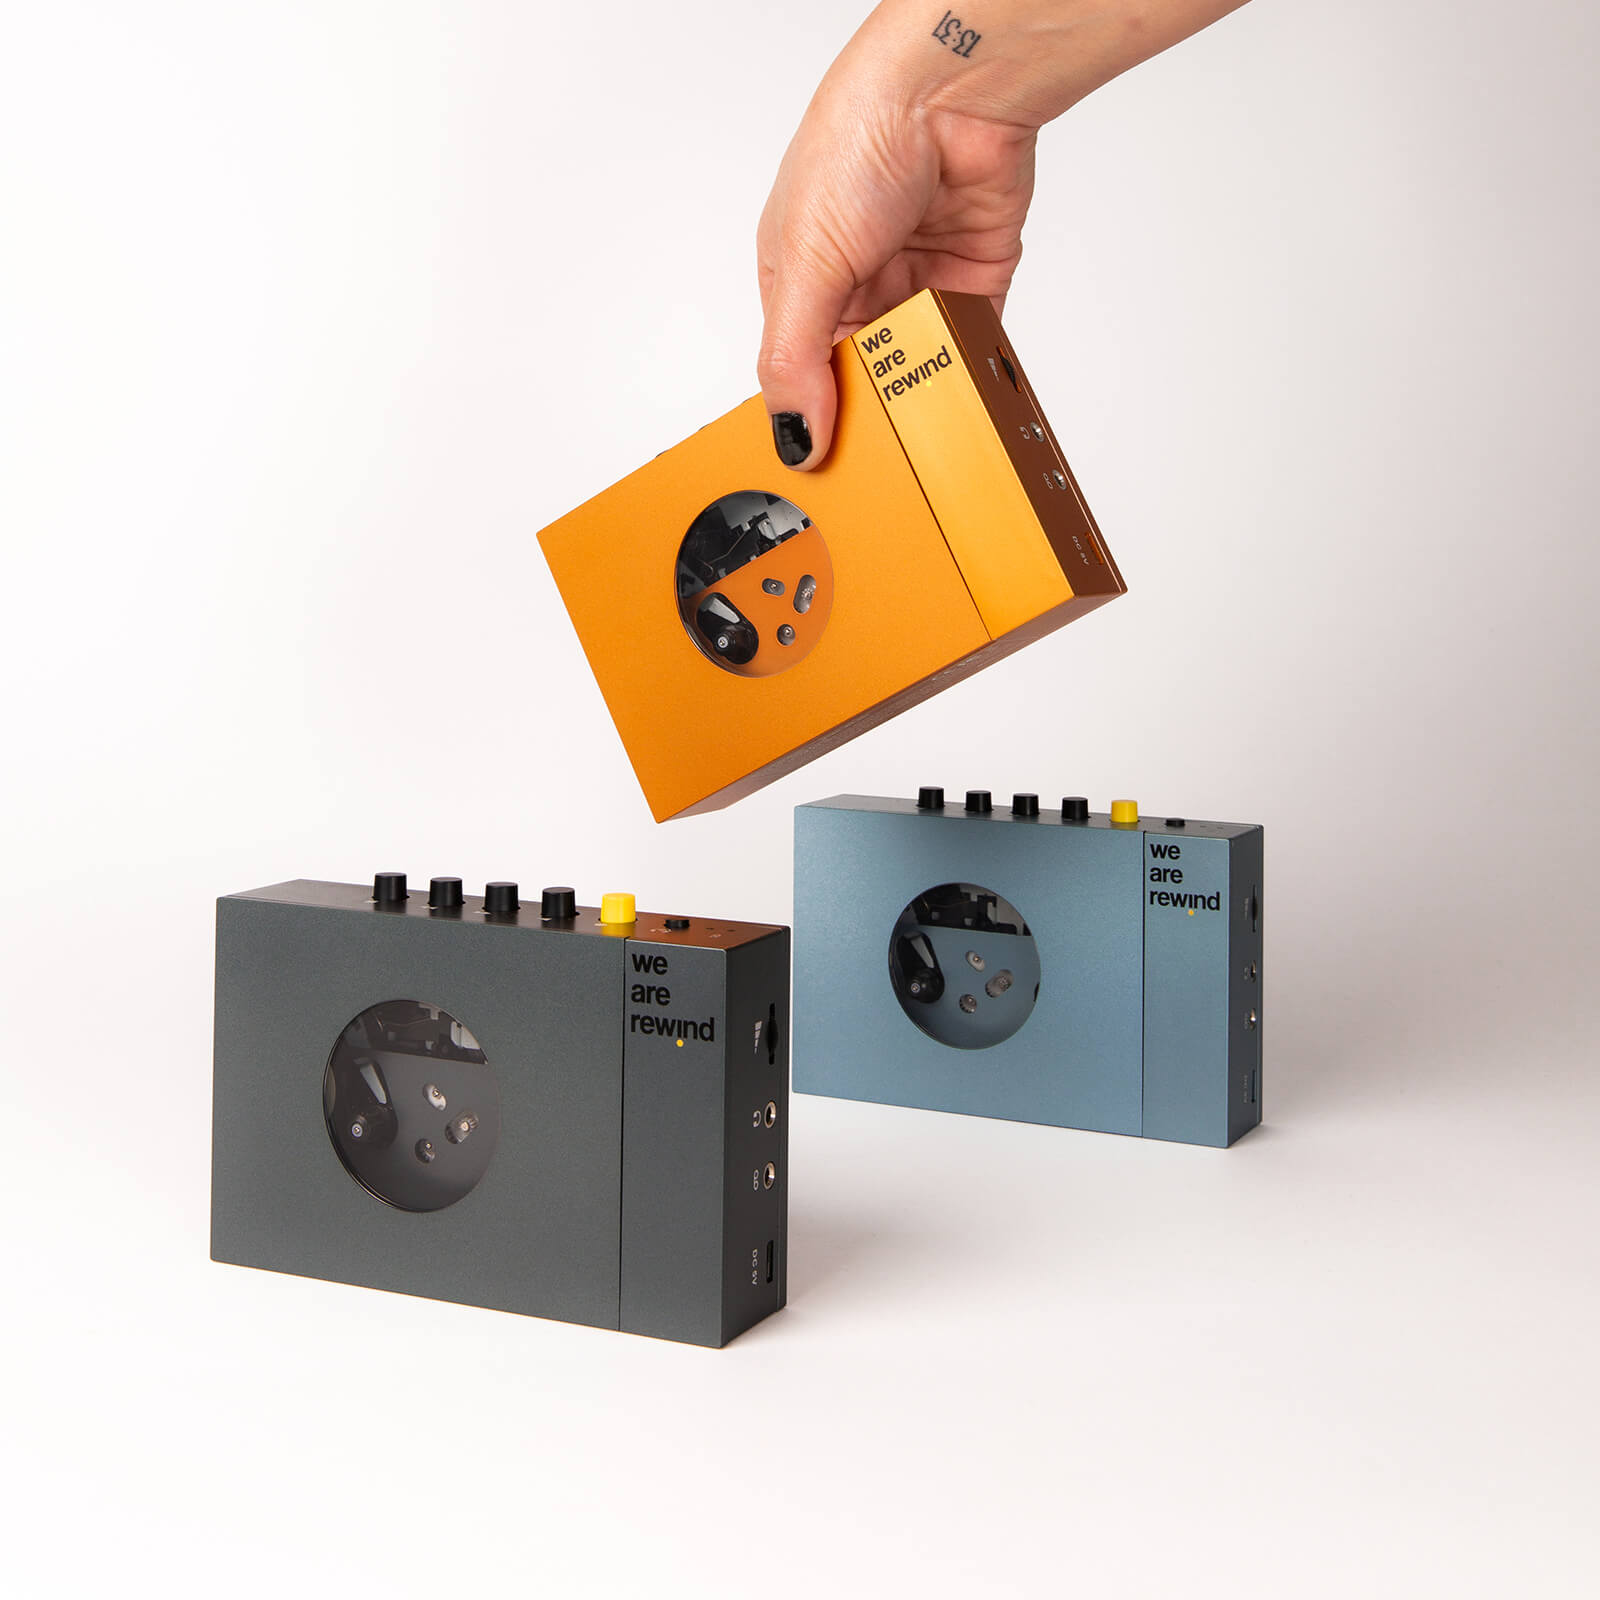 Radio-Cassette/Enregistreur vintage. Compact Cassette.